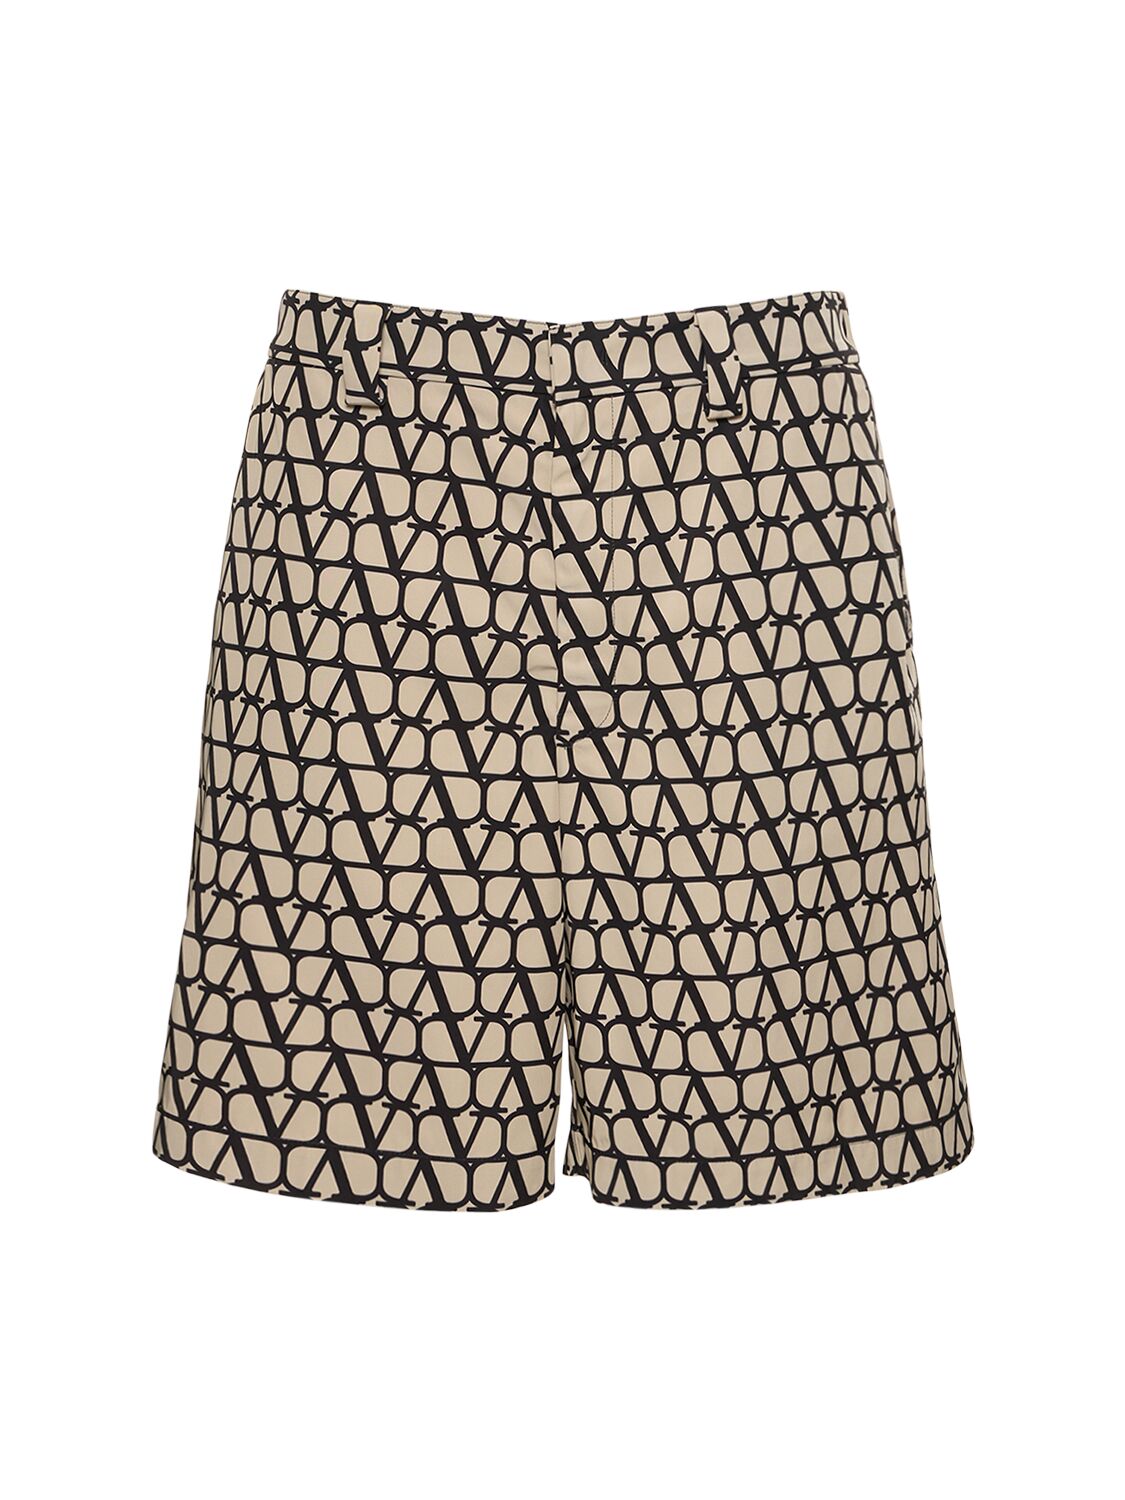 Toile Iconographe Nylon Bermuda Shorts – MEN > CLOTHING > SHORTS